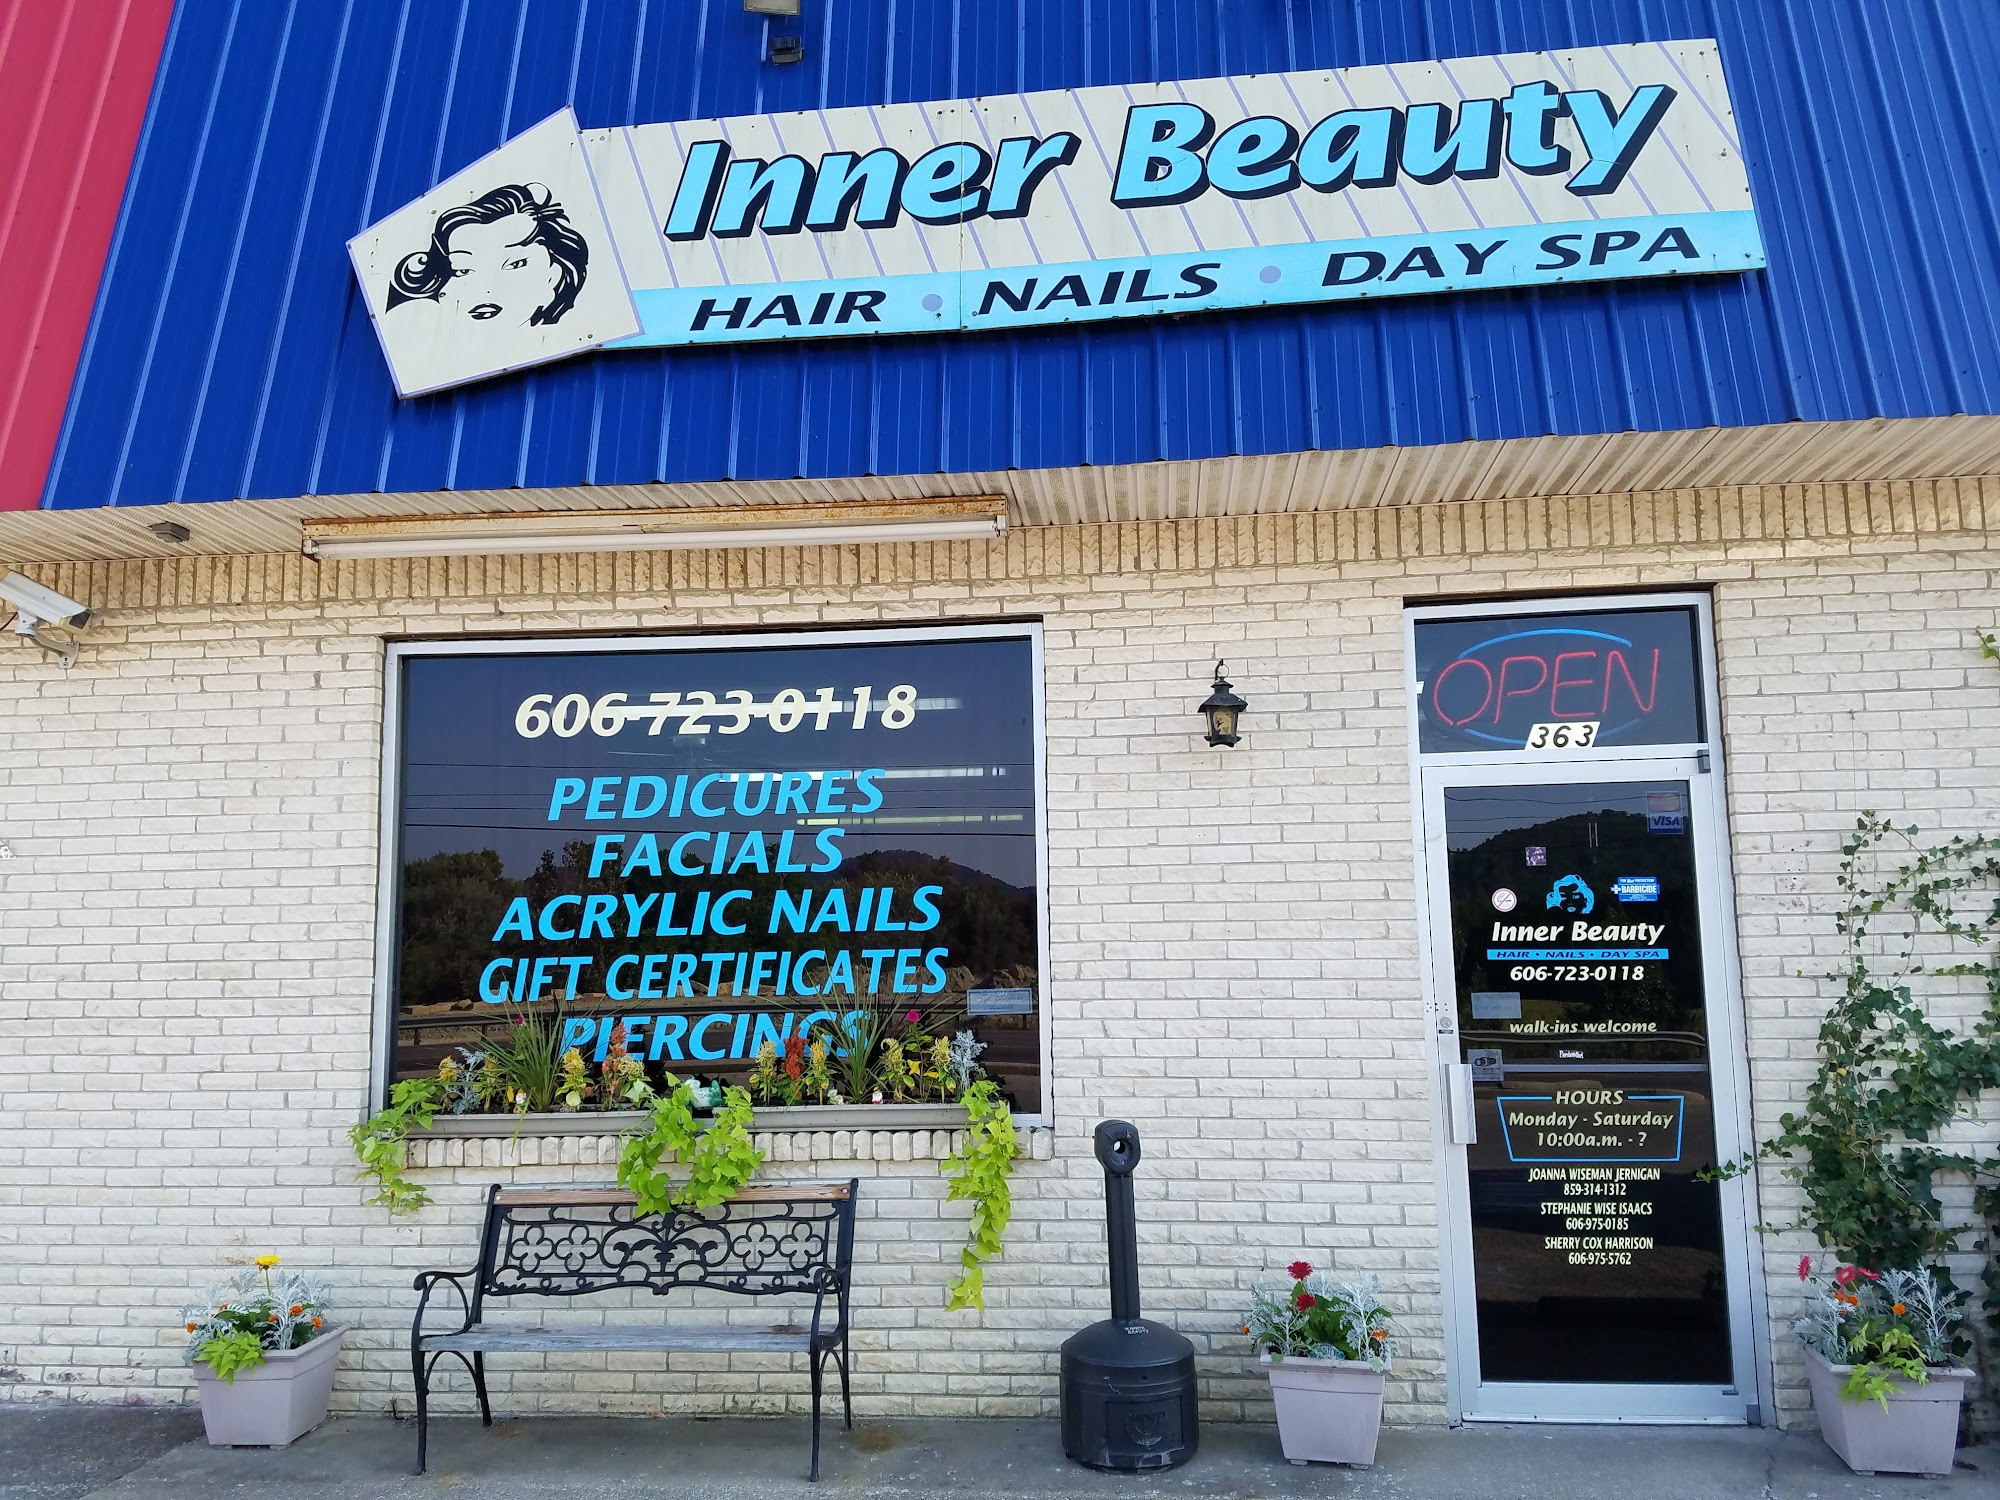 Inner Beauty 363 Richmond Rd, Irvine Kentucky 40336